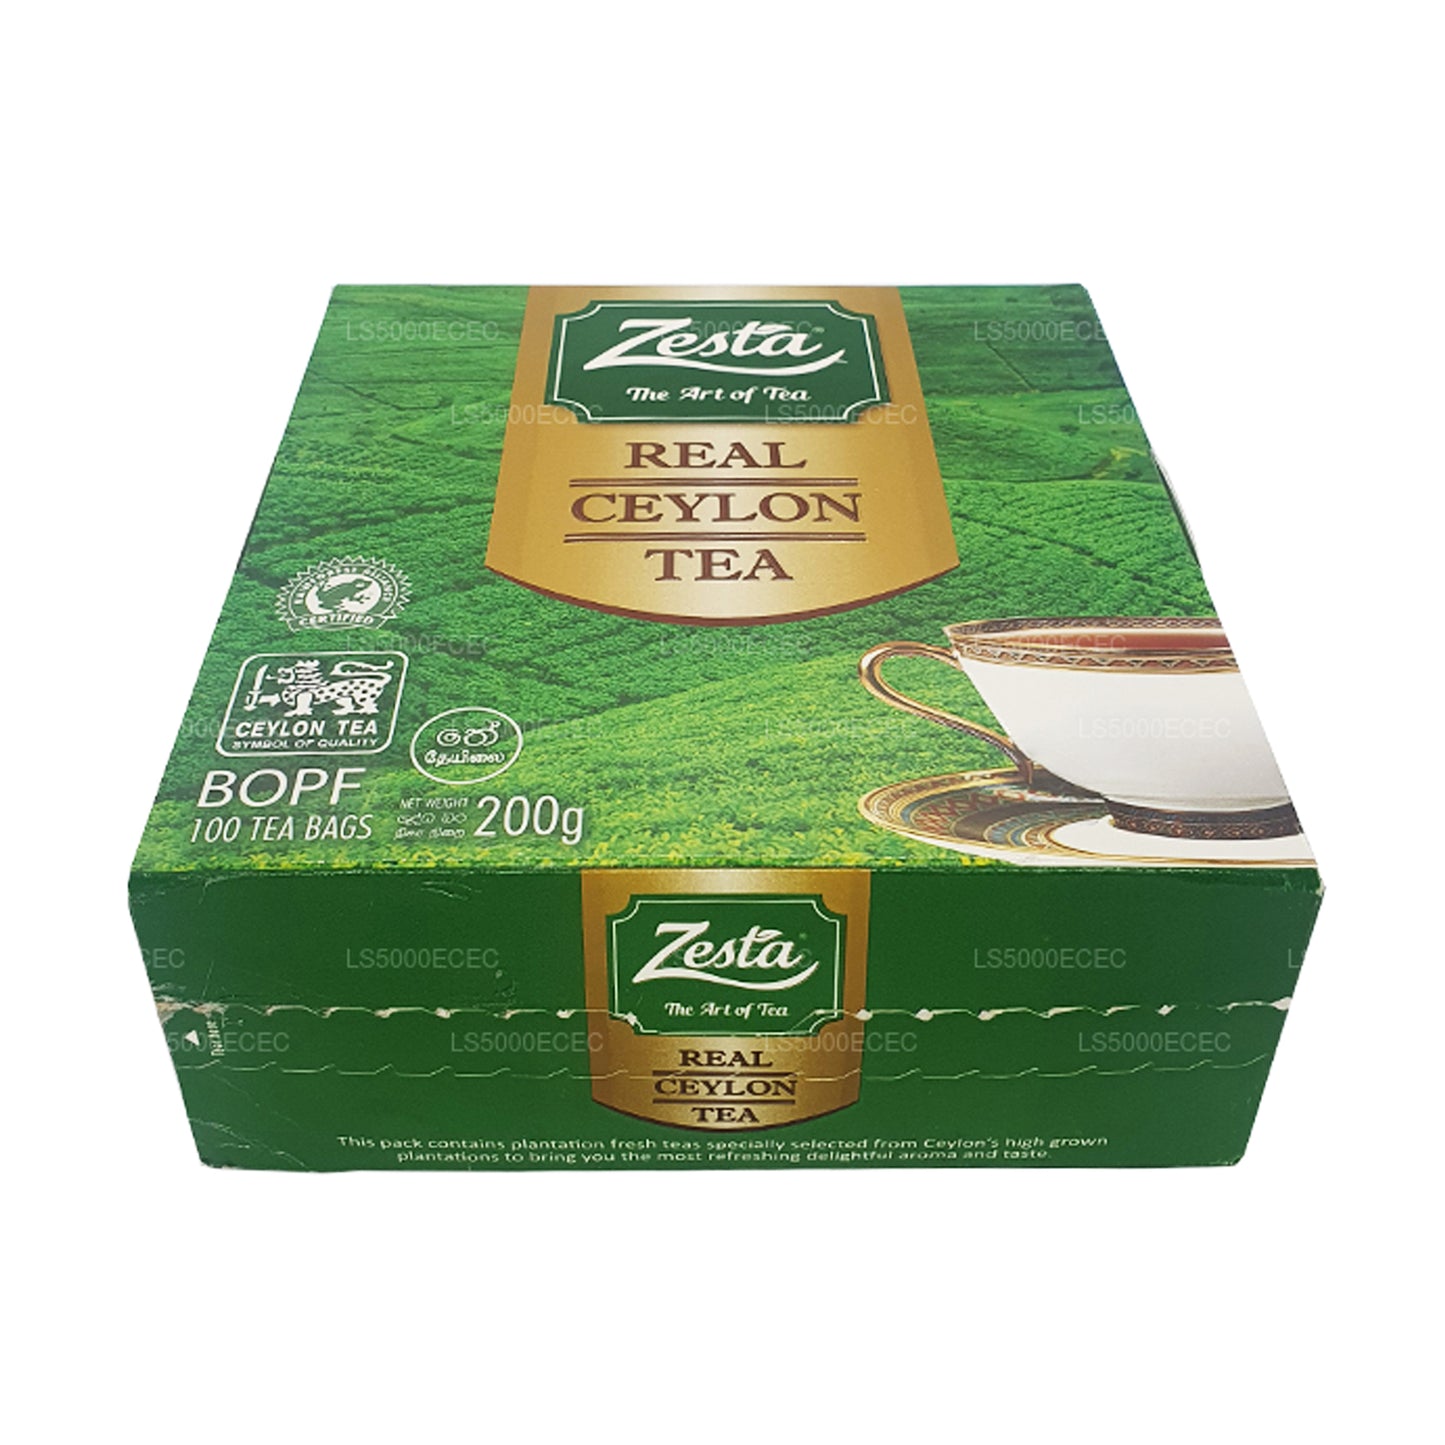 Zesta Gerçek Seylan Çayı (200g) 100 Çay Poşeti